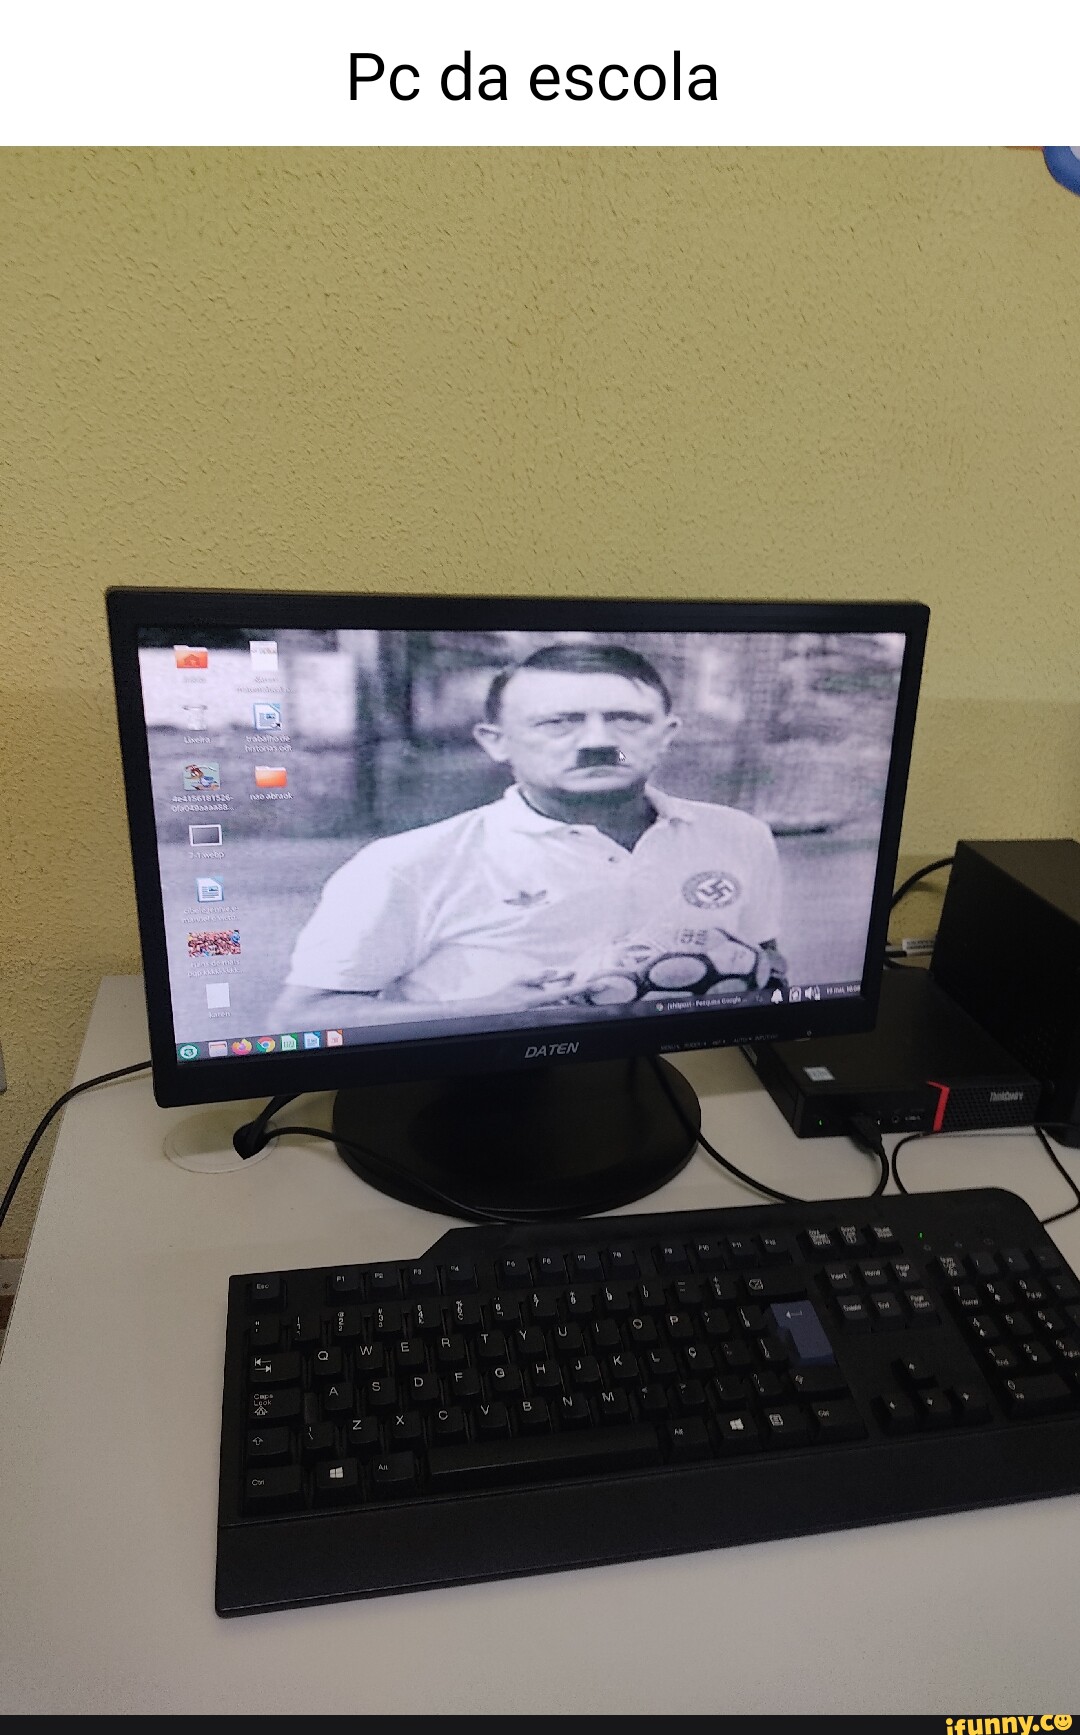 Computador da escola ds Melhorss jogos I - iFunny Brazil